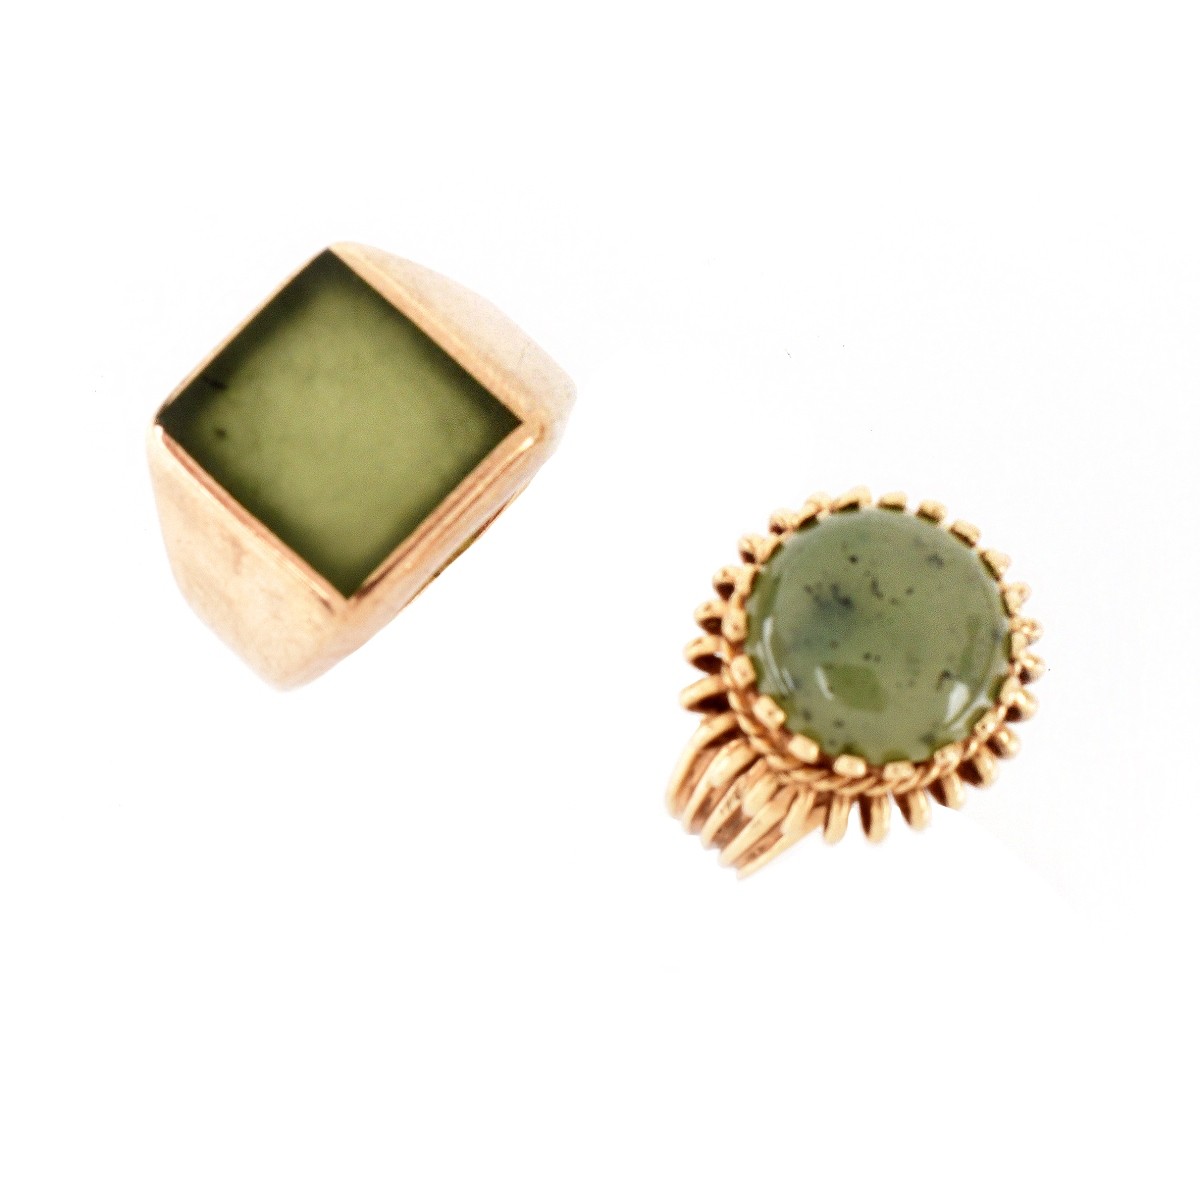 Two Vintage Jade Rings